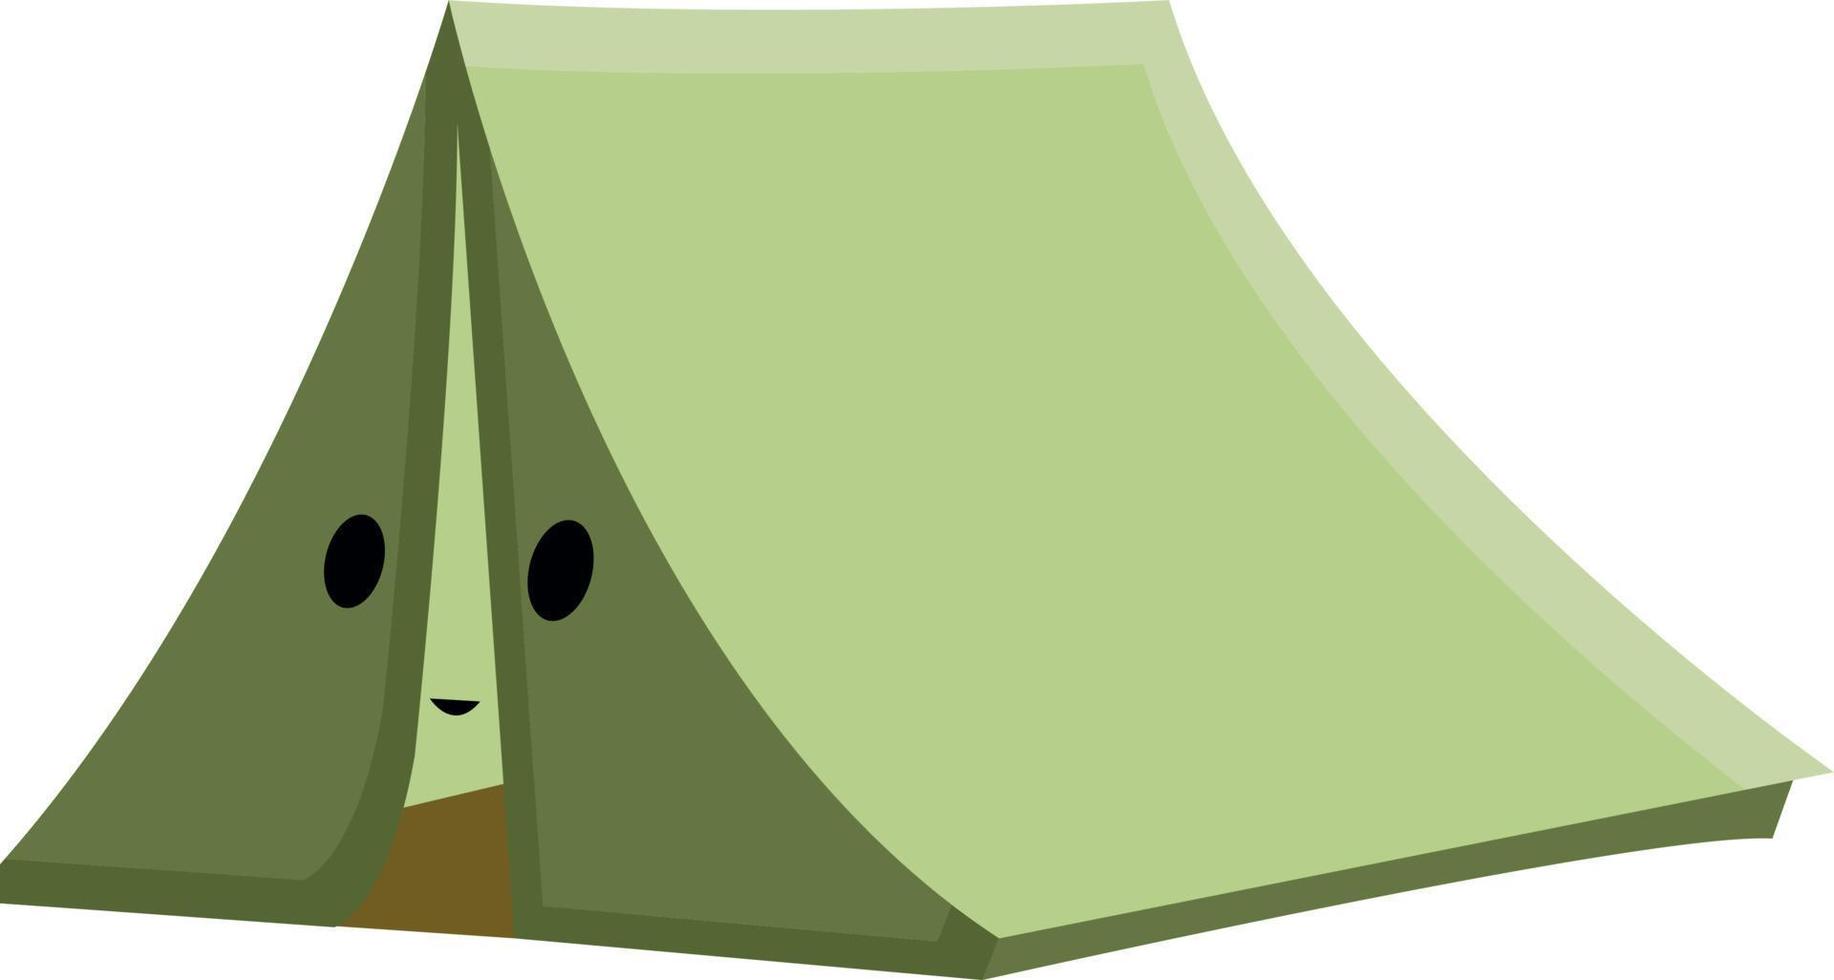 Grünes Zelt, Illustration, Vektor auf weißem Hintergrund.